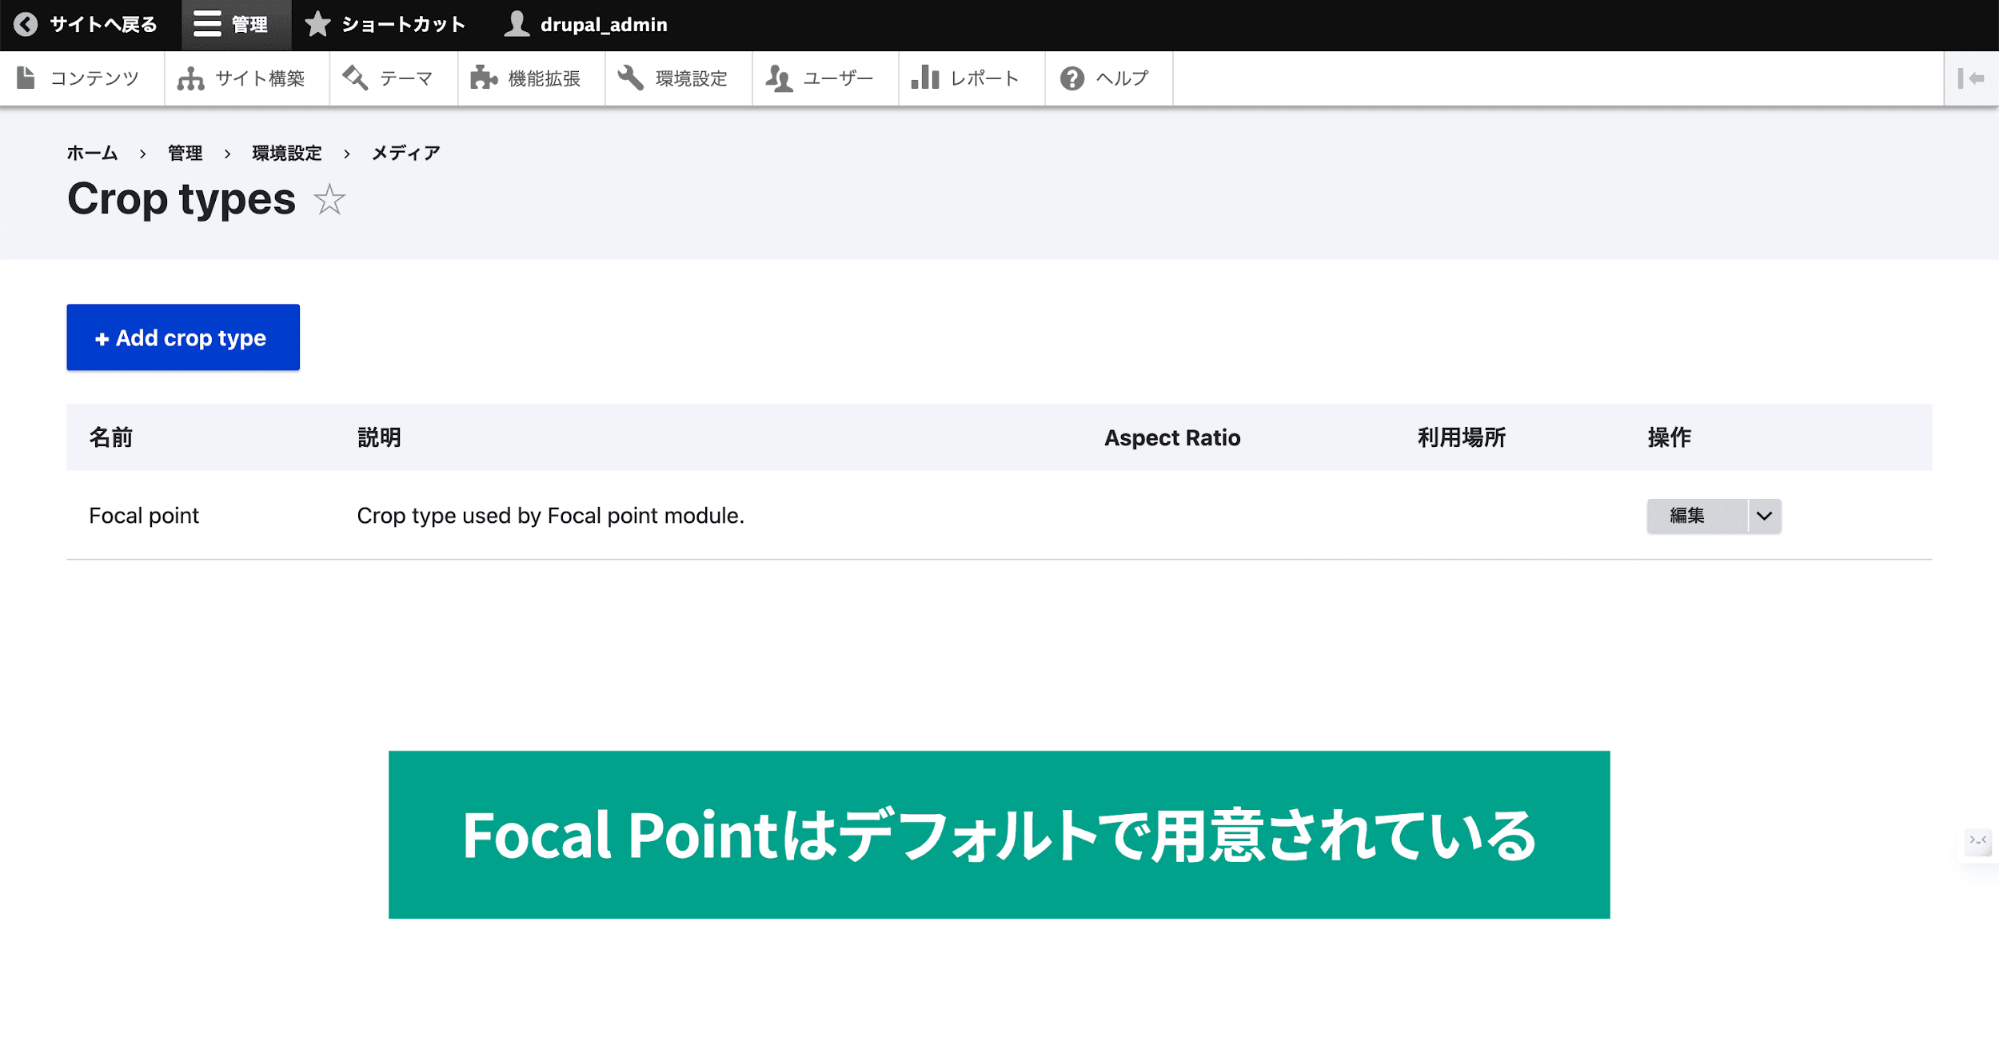 スクリーンショット「Focal Pointはデフォルトで用意されている」